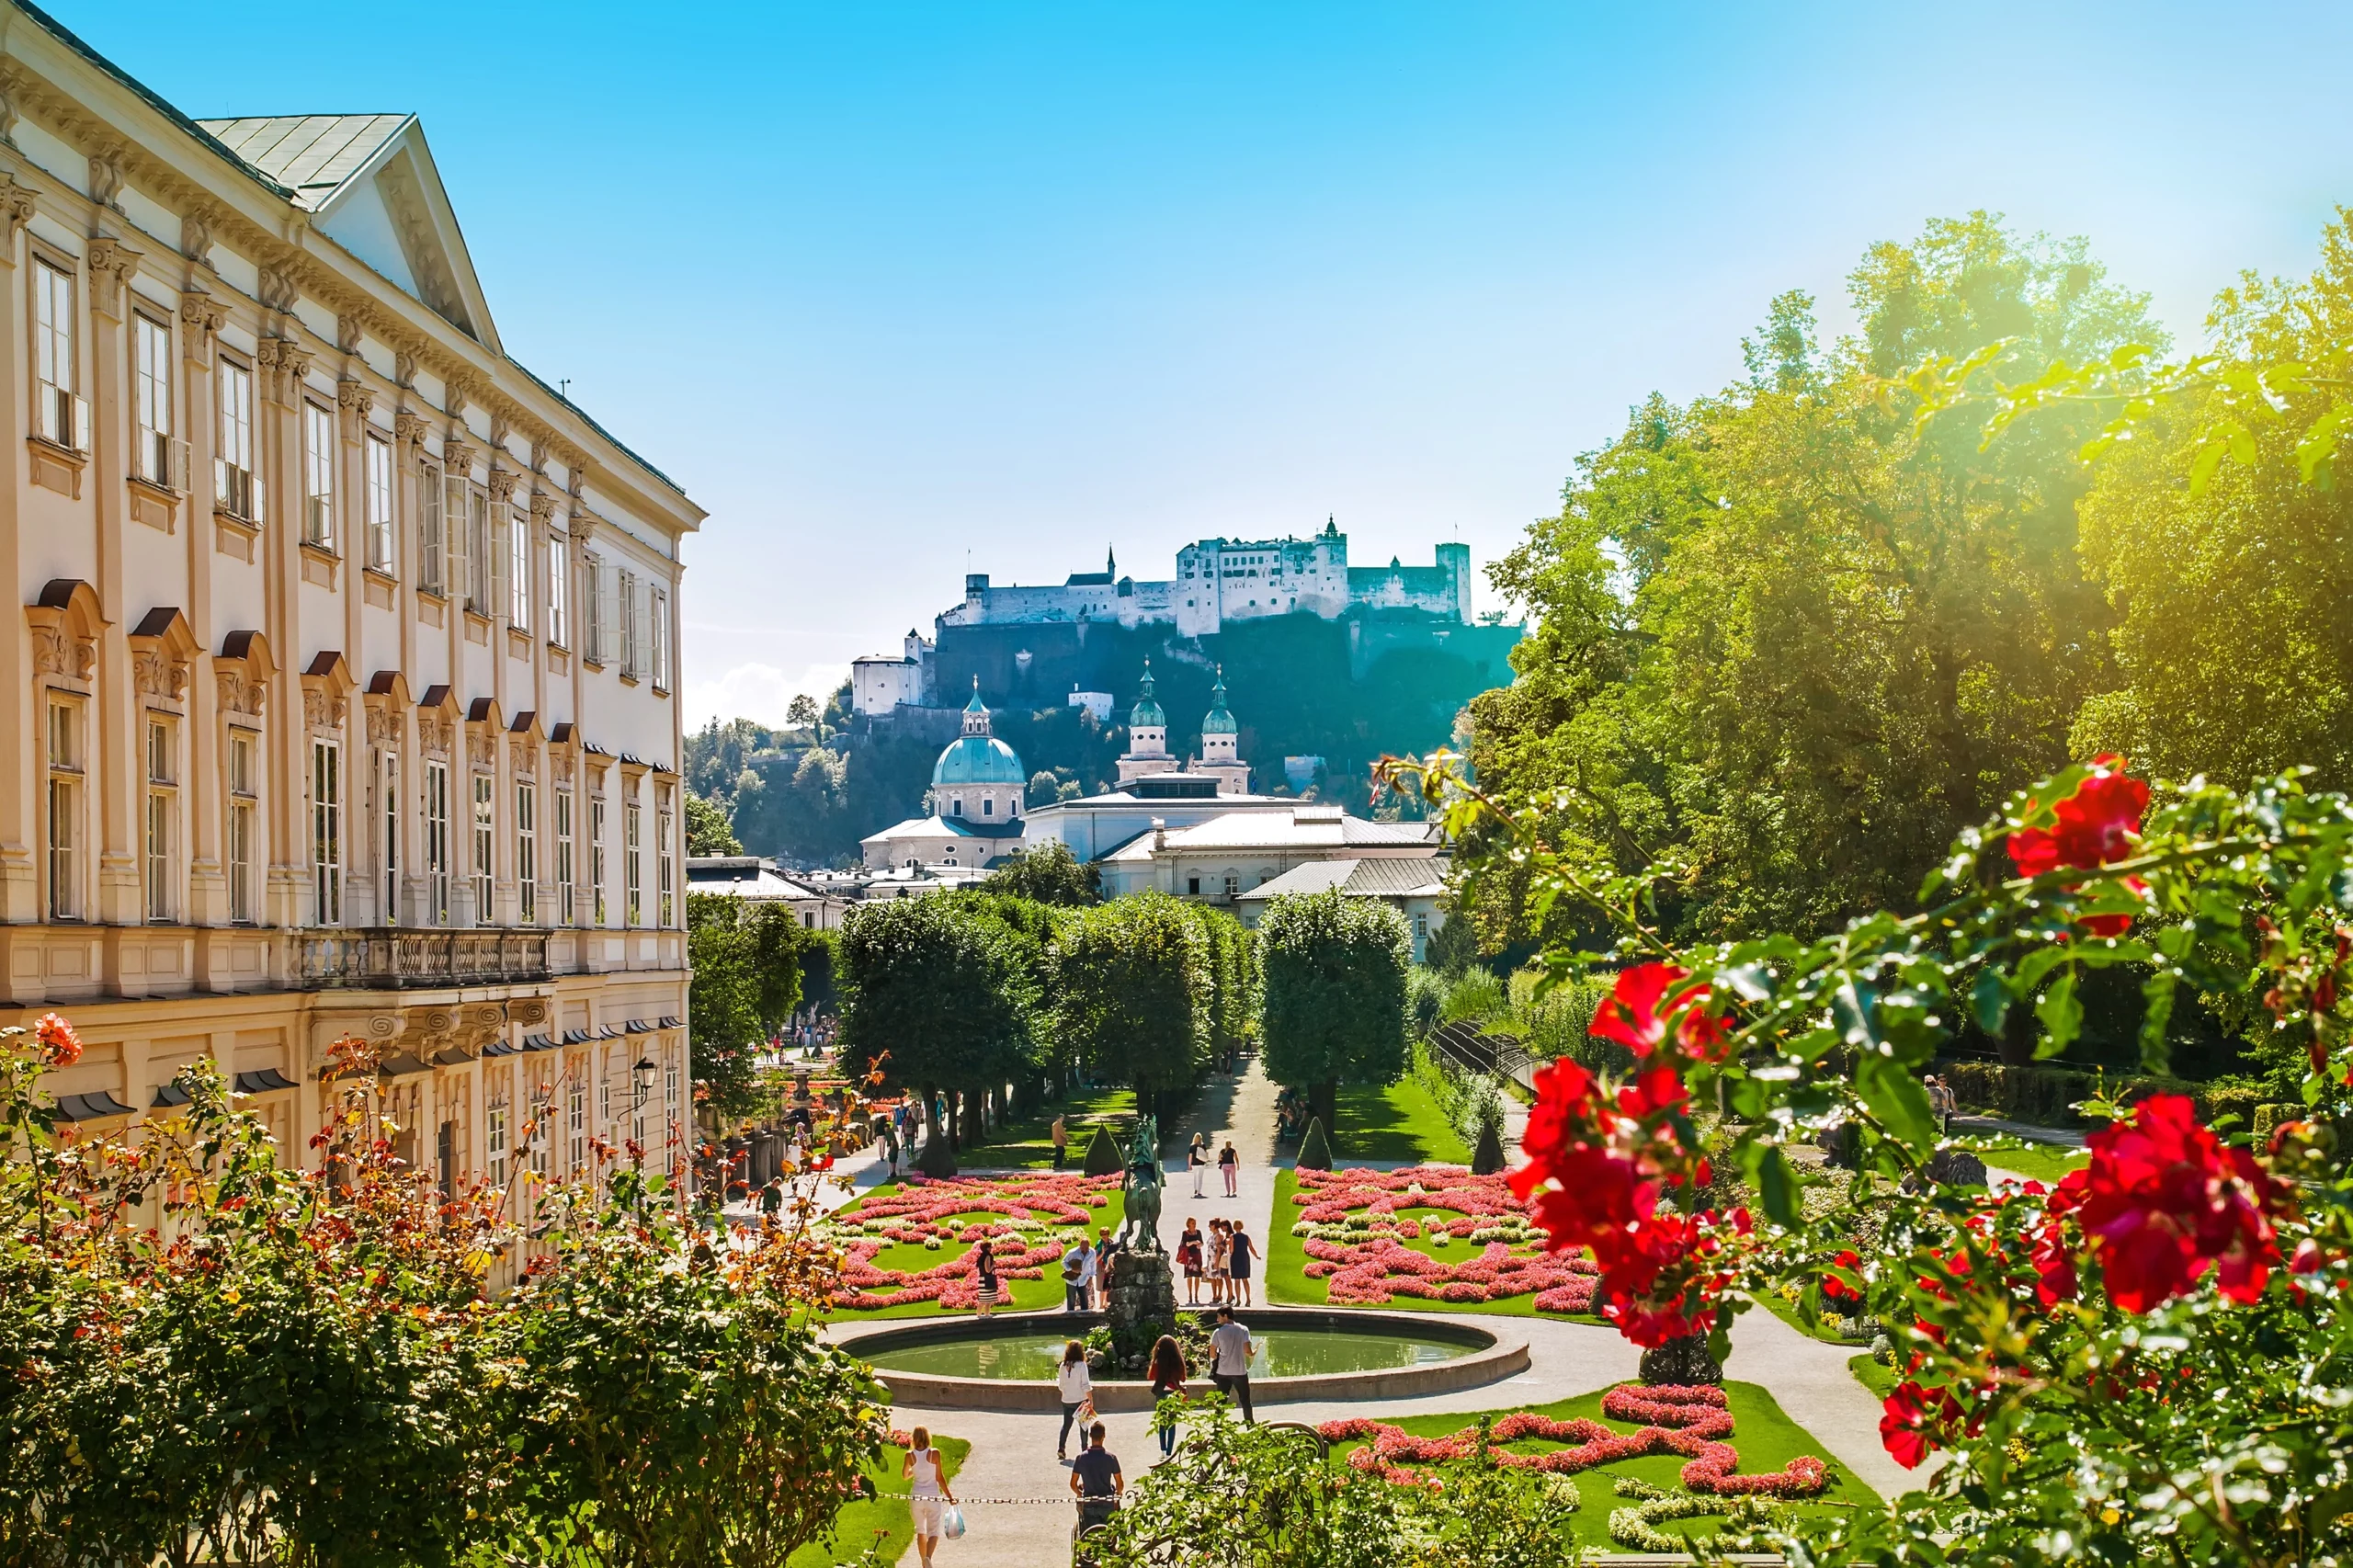 Heiraten im malerischen Schloss Mirabell mit Blick auf die wunderschöne Festung Salzburg.